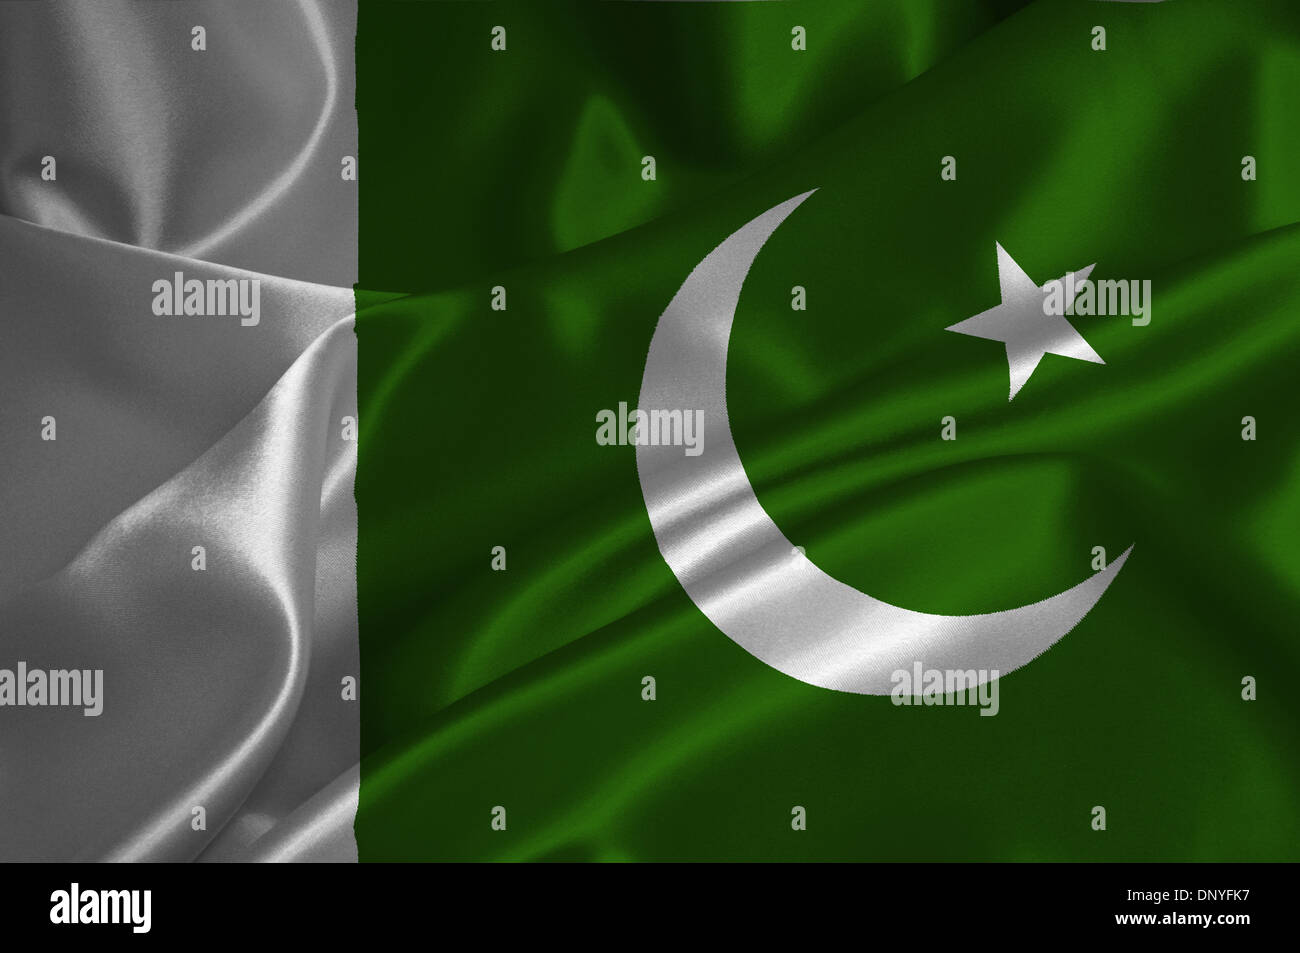 Pakistan flag on satin texture. Stock Photo